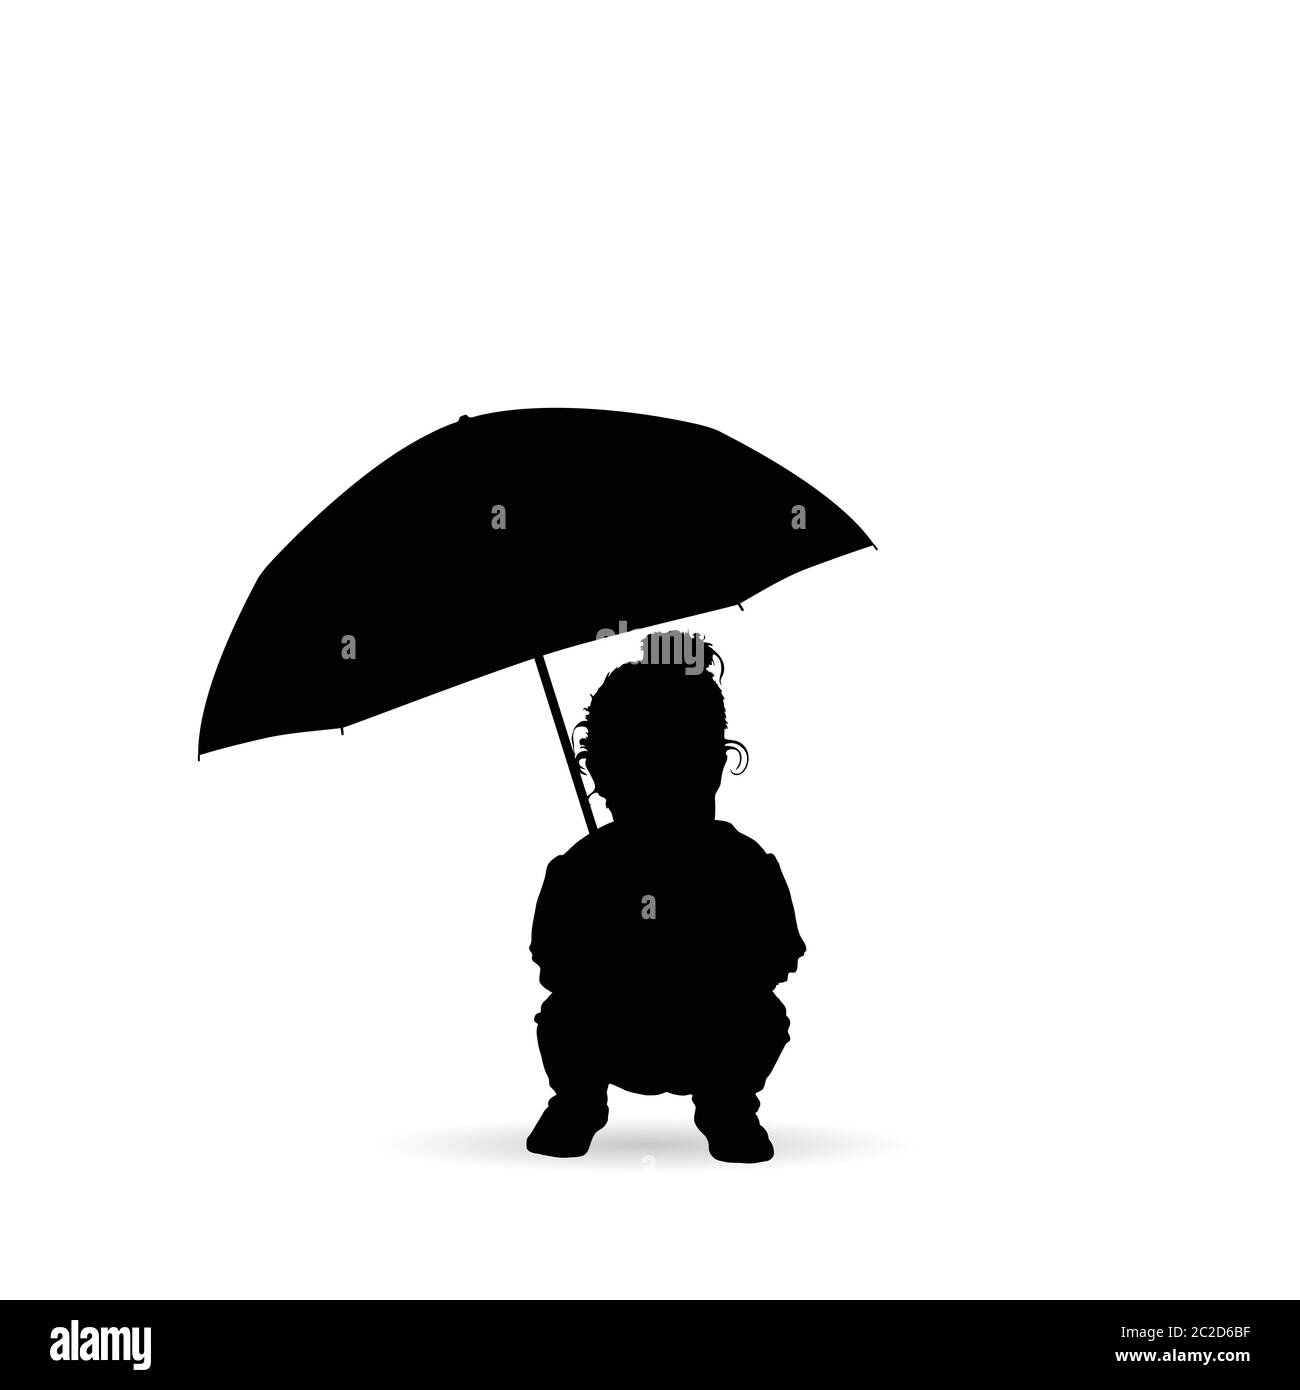 Kind ergreift und hält die Regenschirm Silhouette in schwarzer Farbe  Stock-Vektorgrafik - Alamy